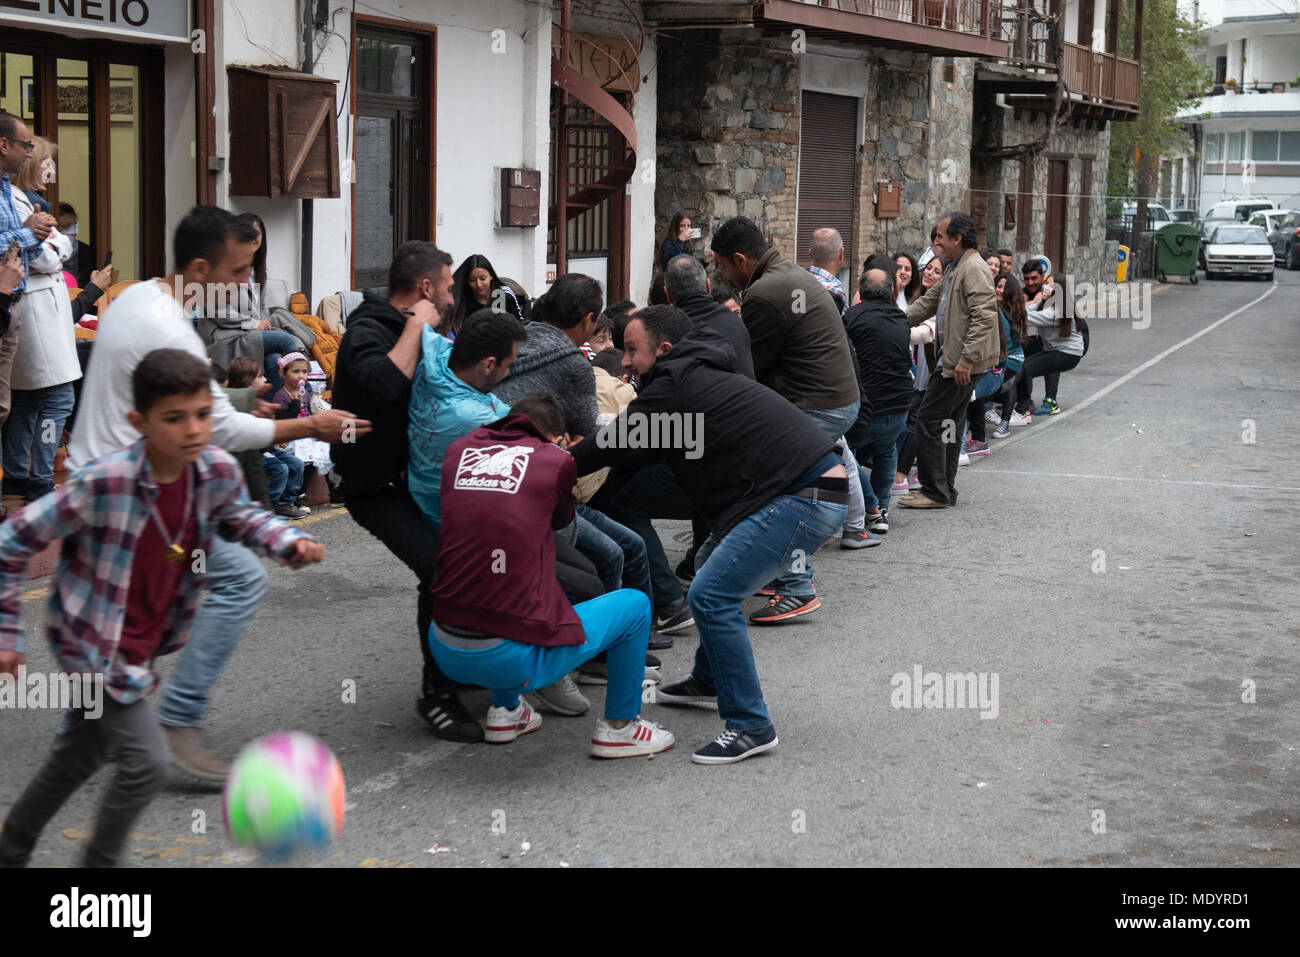 Palaichori, Chypre - 8 Avril 2018 : Groupe de personnes qui jouent des jeux traditionnel de Pâques à Palaicholi village de Chypre. Banque D'Images